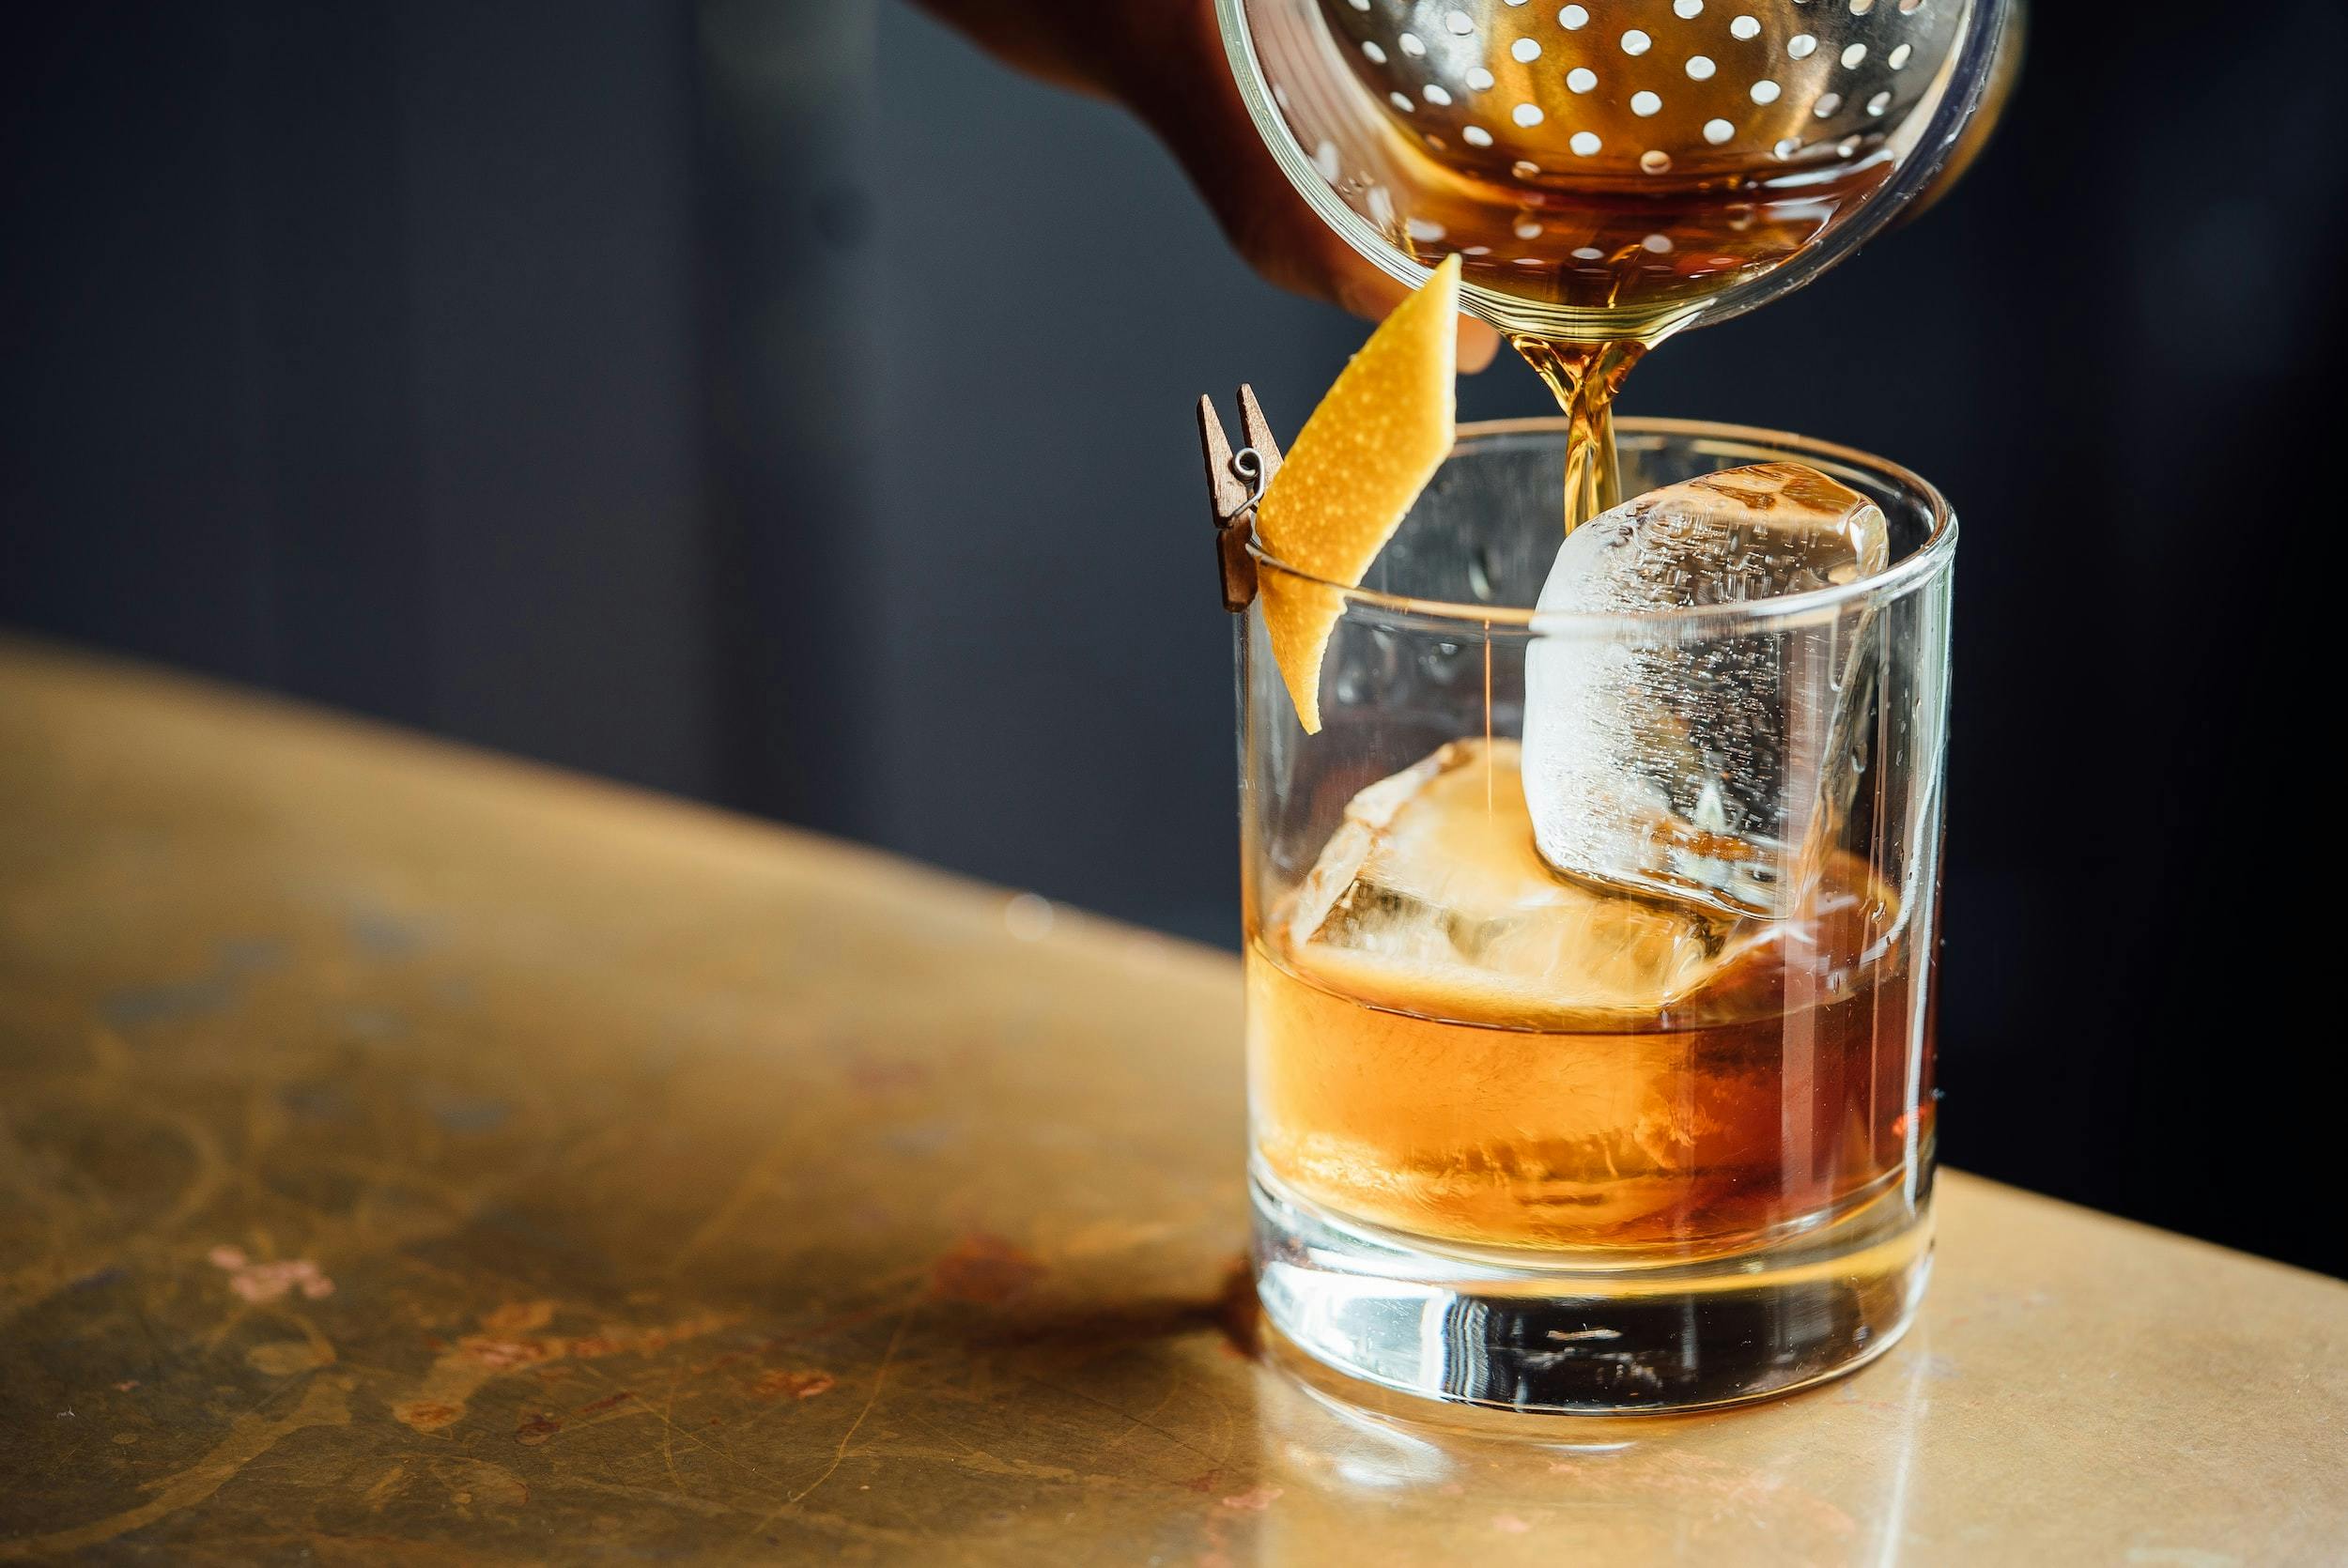 Una mano versa del liquido color ambrato in un bicchiere di vetro, poggiato su un tavolo color oro e pieno a metà, con cubetti di ghiaccio, scorza di arancia fissata al bordo con una moletta di legno.